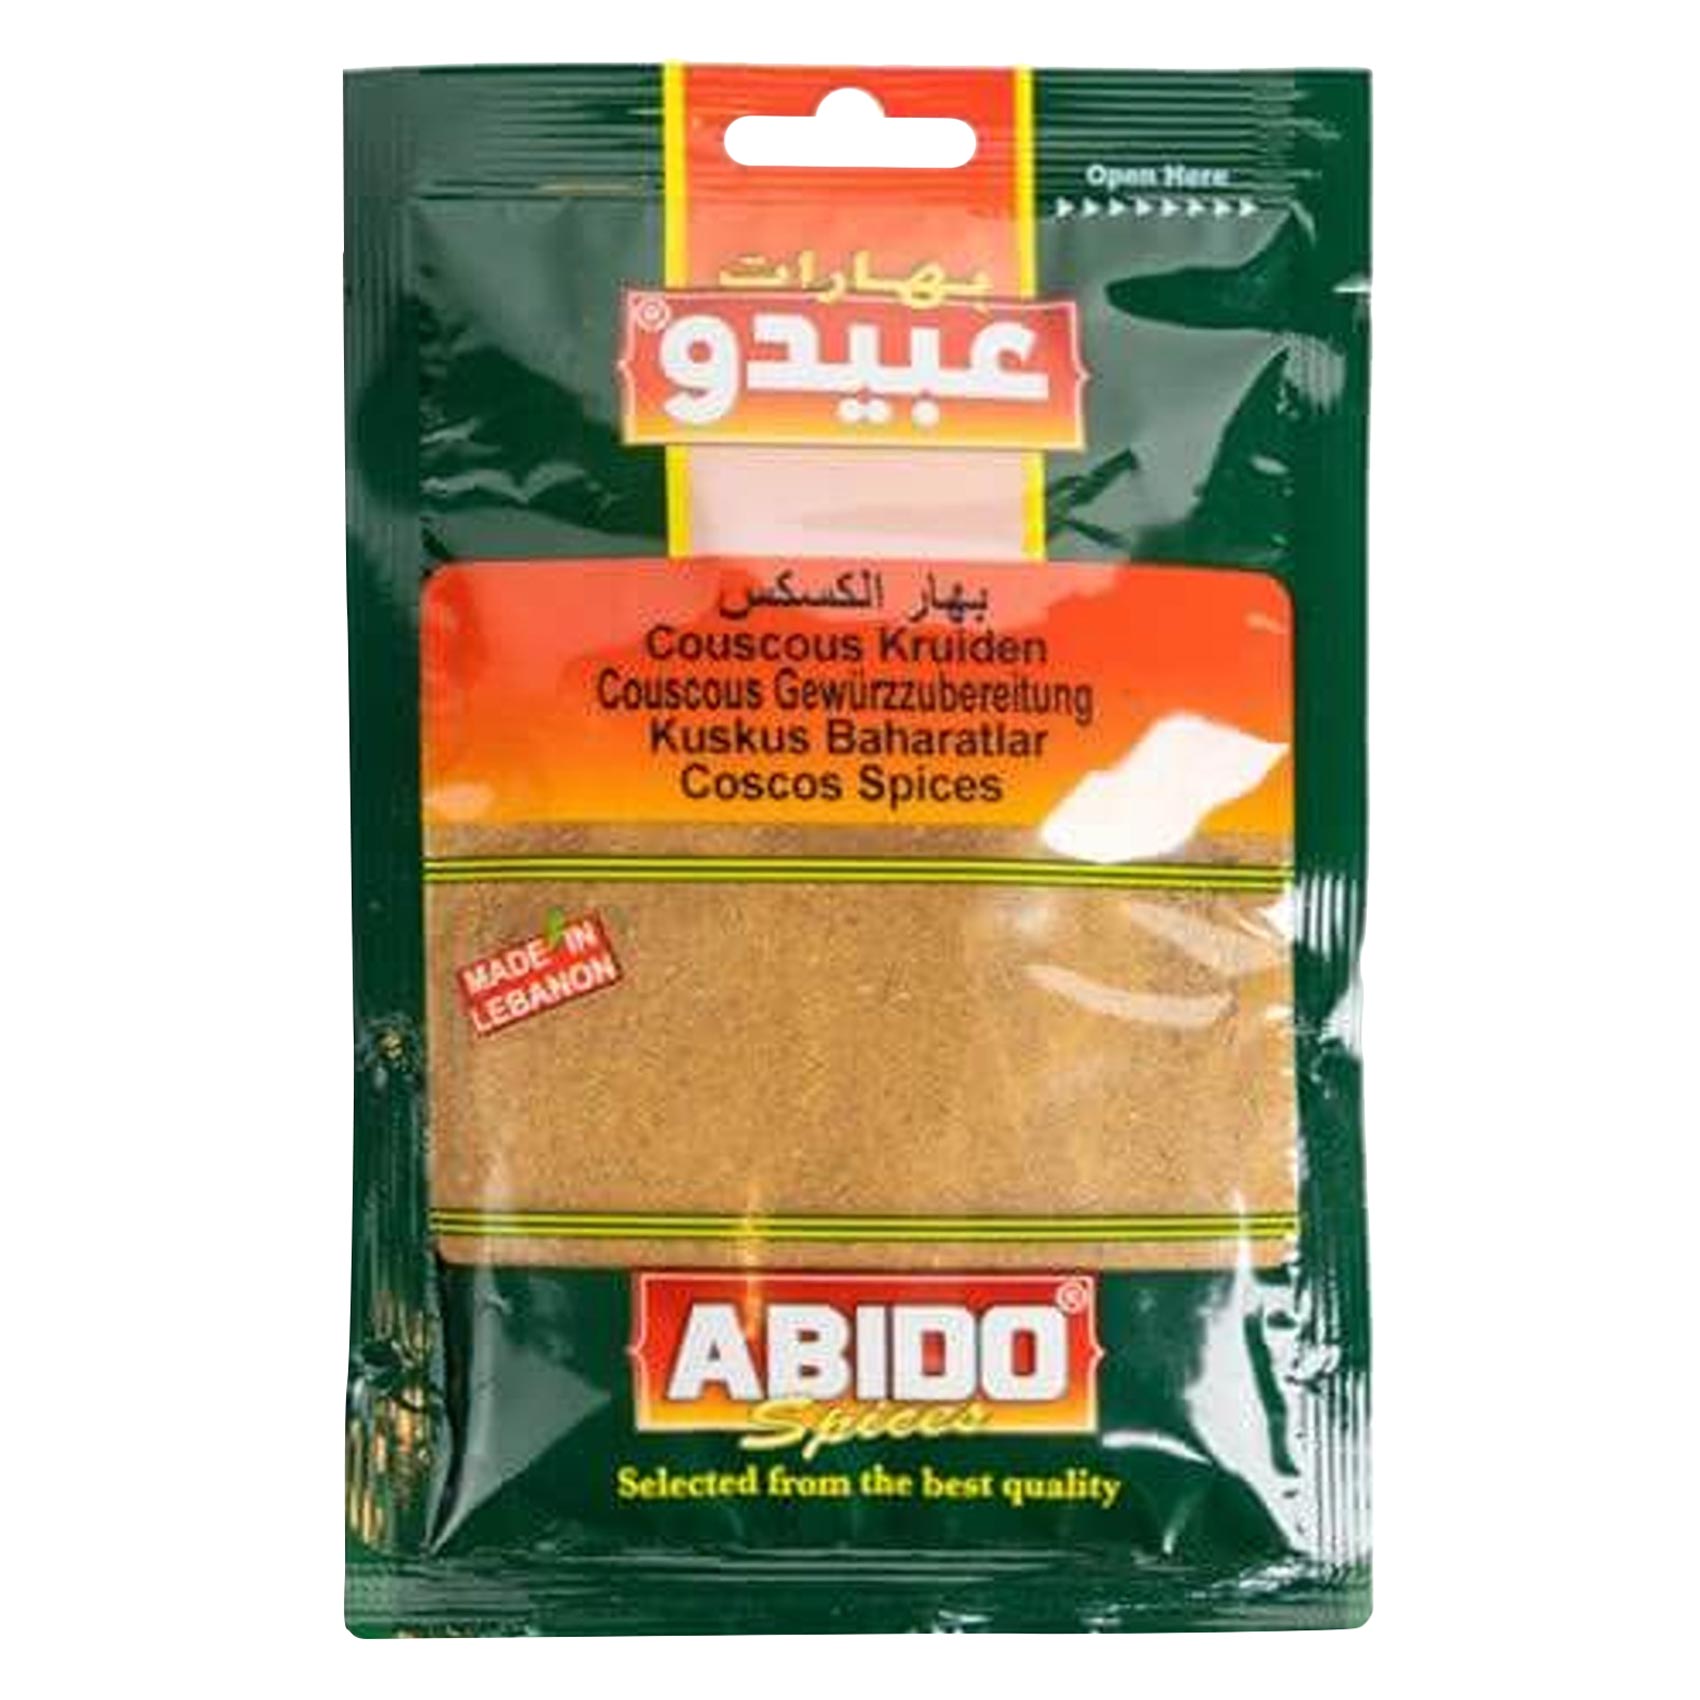 Abido Couscous Spices 100g